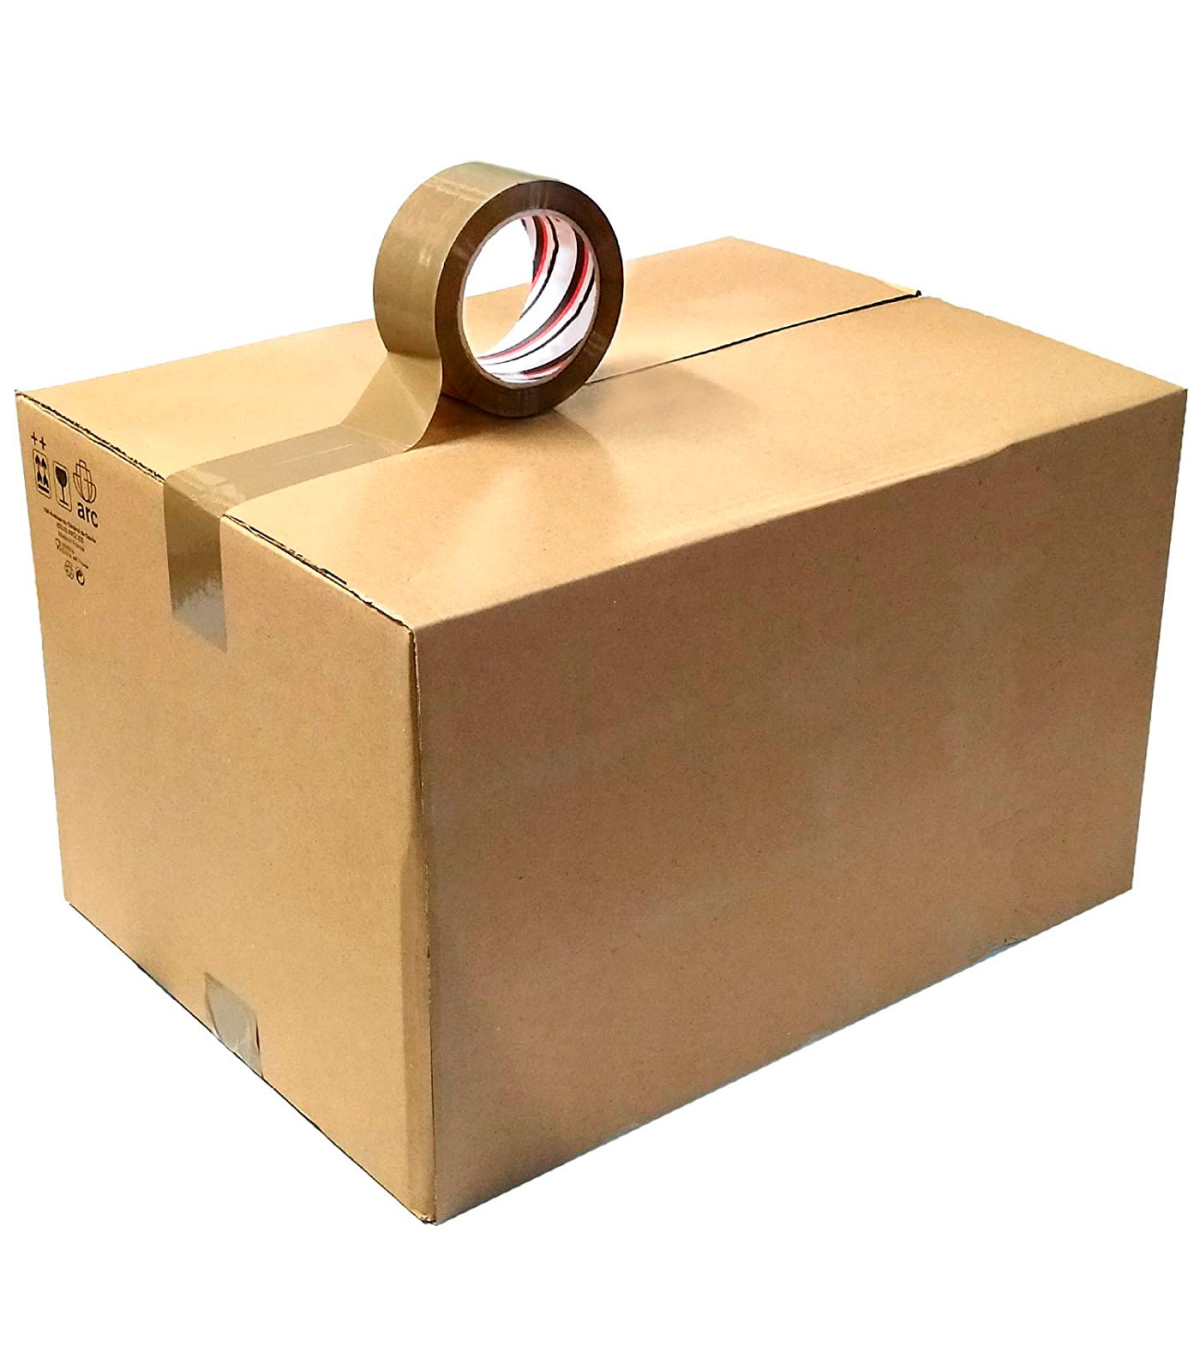 Cajas de Cartón, Bolsas de Papel, Cintas Adhesivas y Embalajes